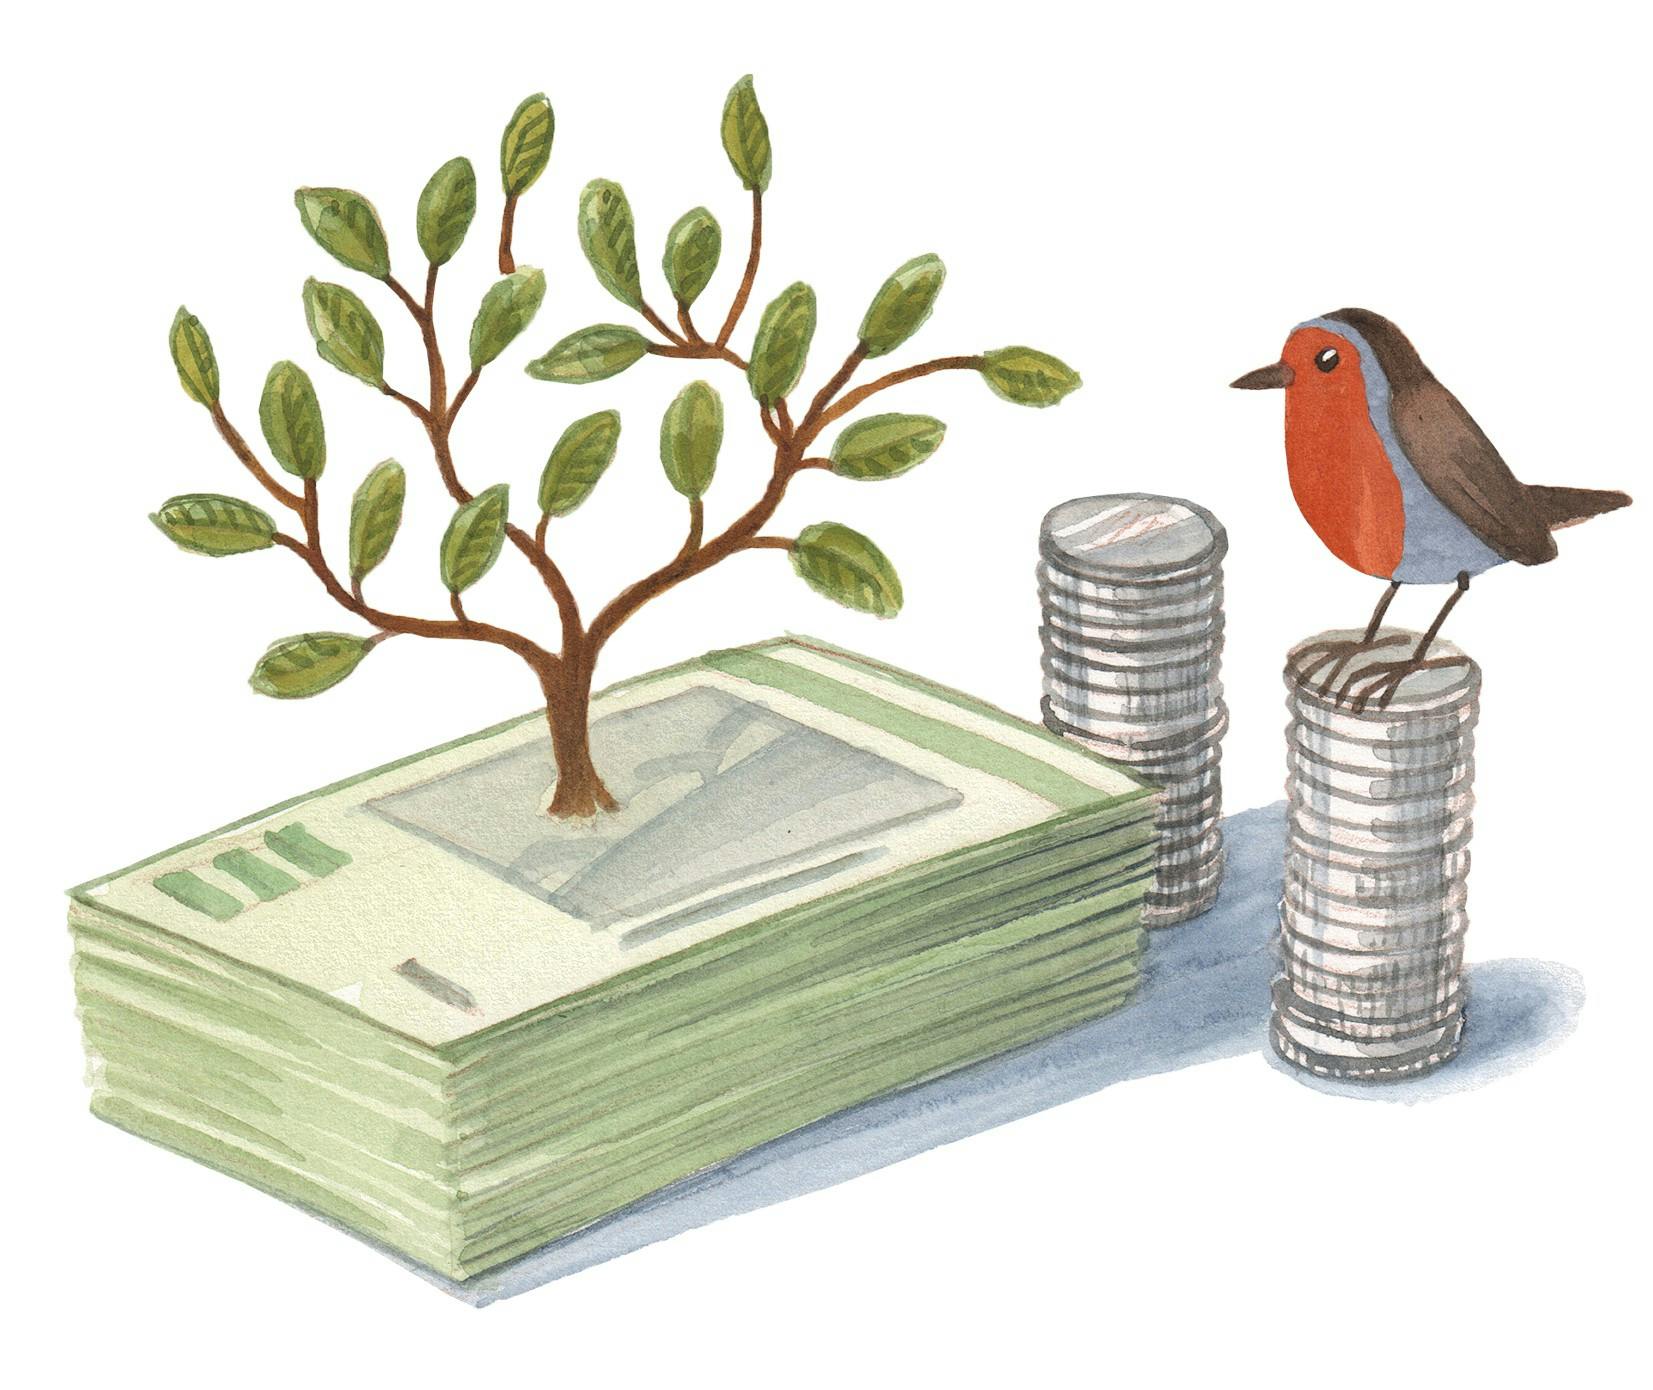 En lille fugl, et træ og nogle penge